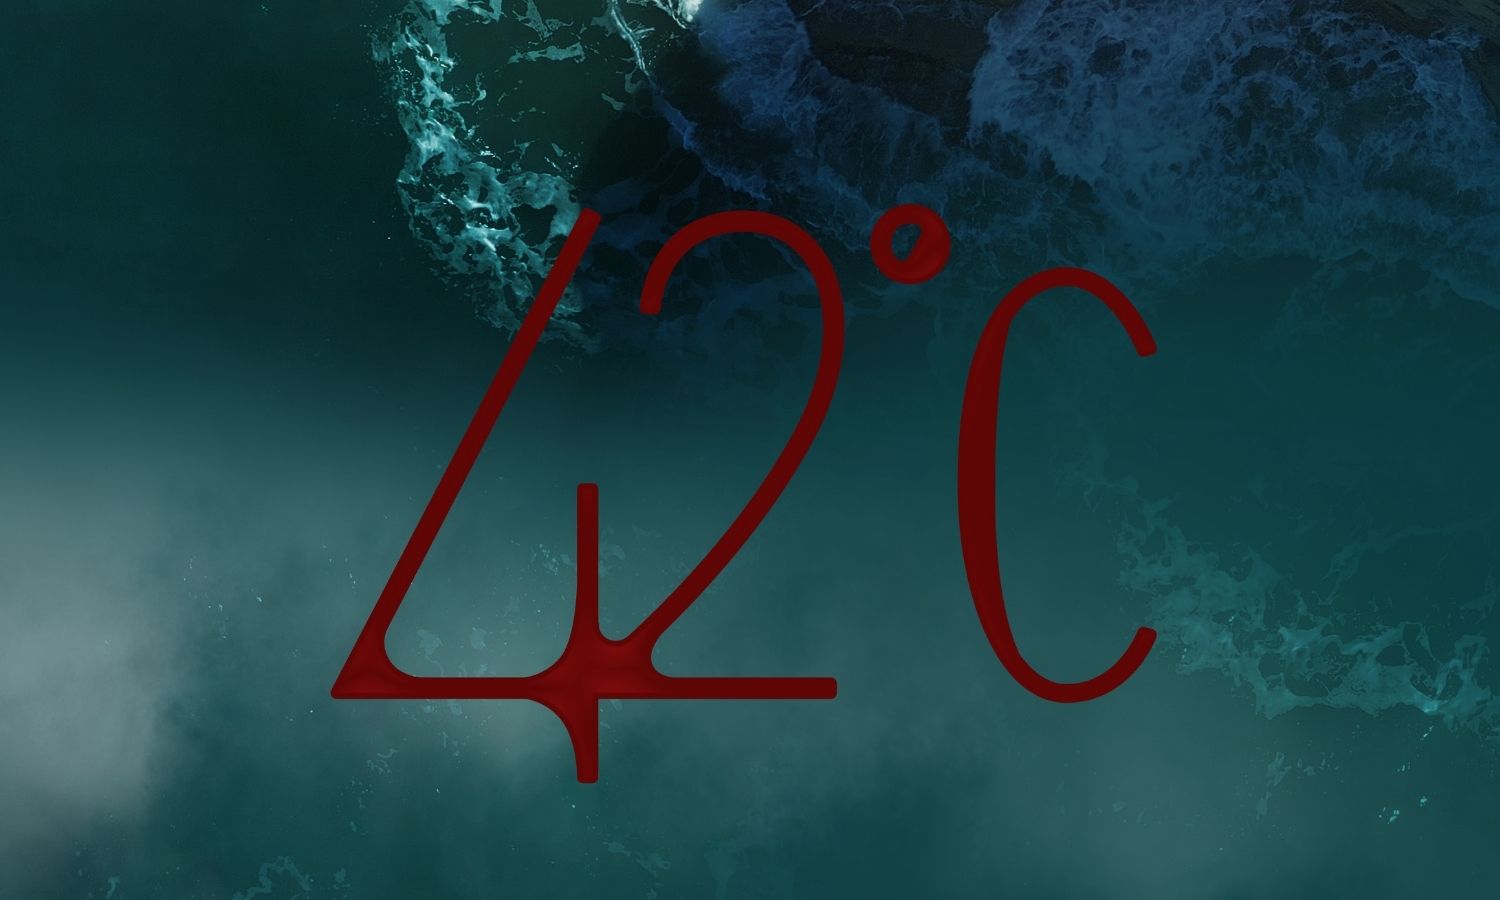 42°C